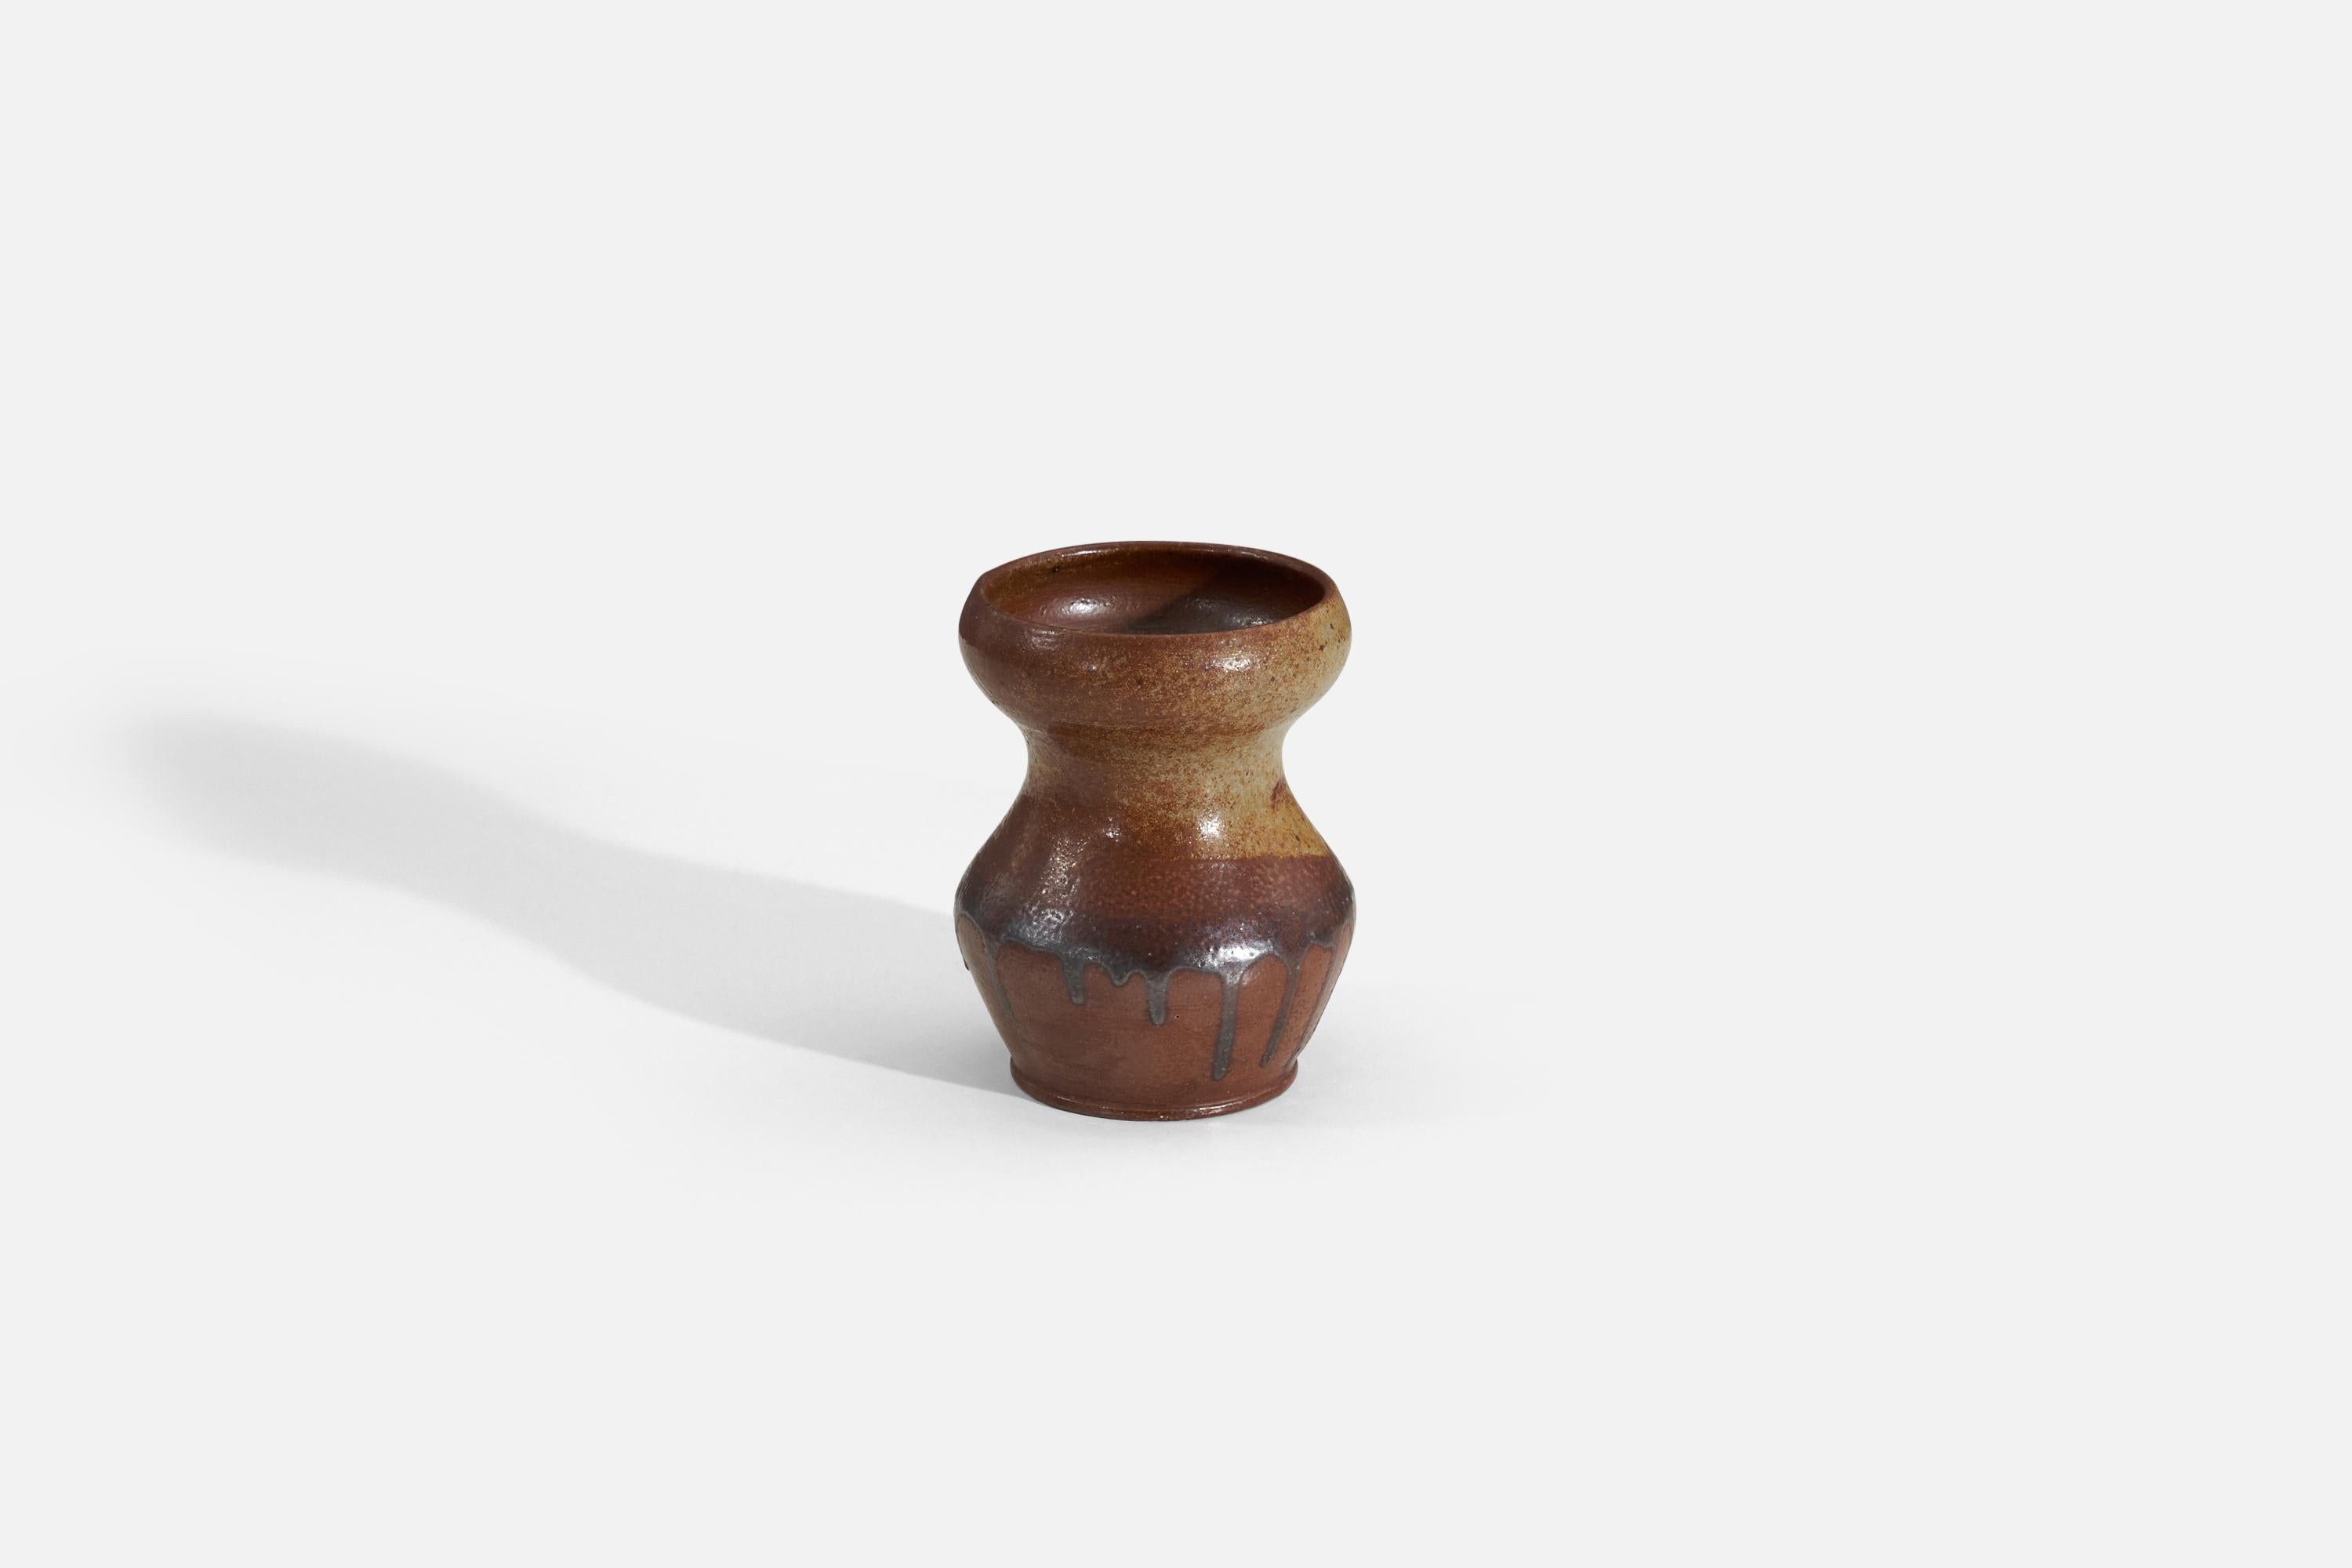 Un vase en grès organique émaillé brun/jaune produit par Raus Keramik, Suède, vers les années 1940.